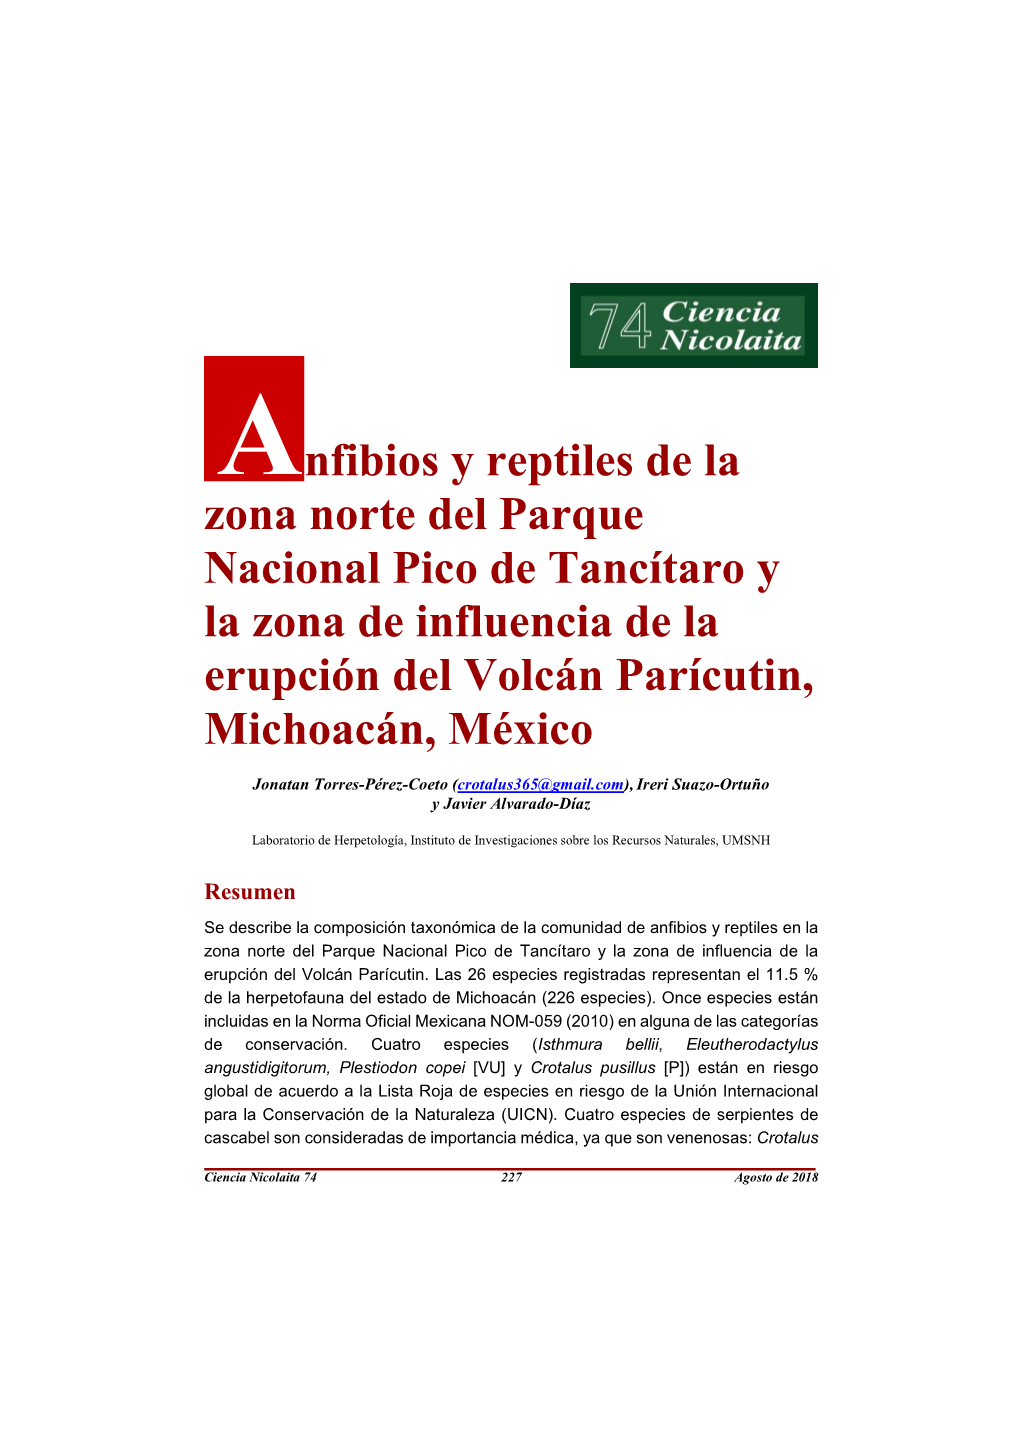 Anfibios Y Reptiles De La Zona Norte Del Parque Nacional Pico De Tancítaro Y La Zona De Influencia De La Erupción Del Volcán